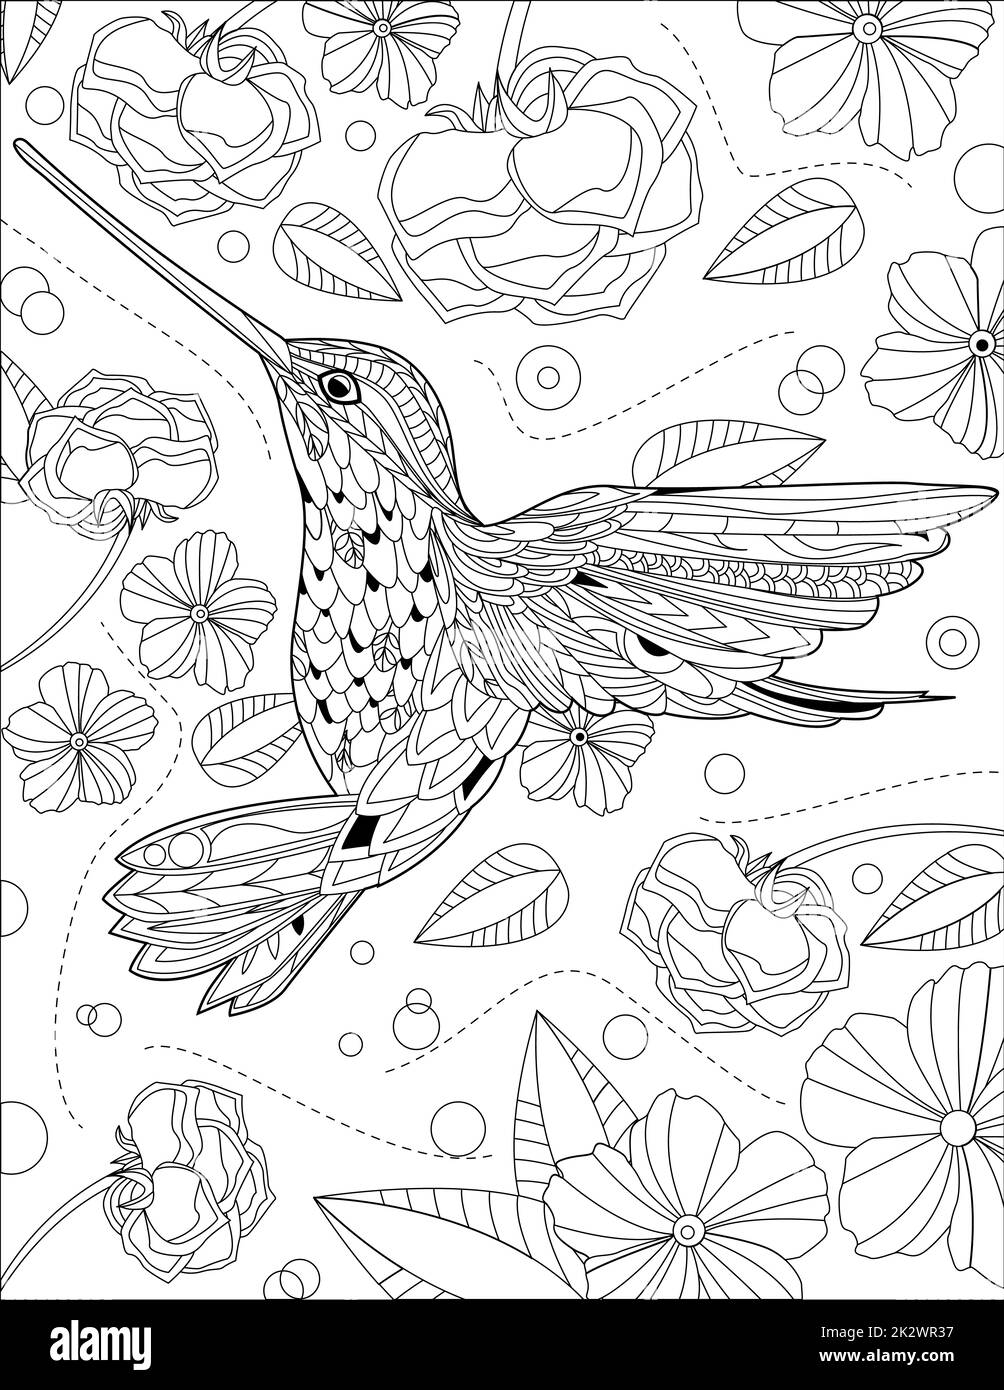 Lindo colibrí Imágenes de stock en blanco y negro - Alamy